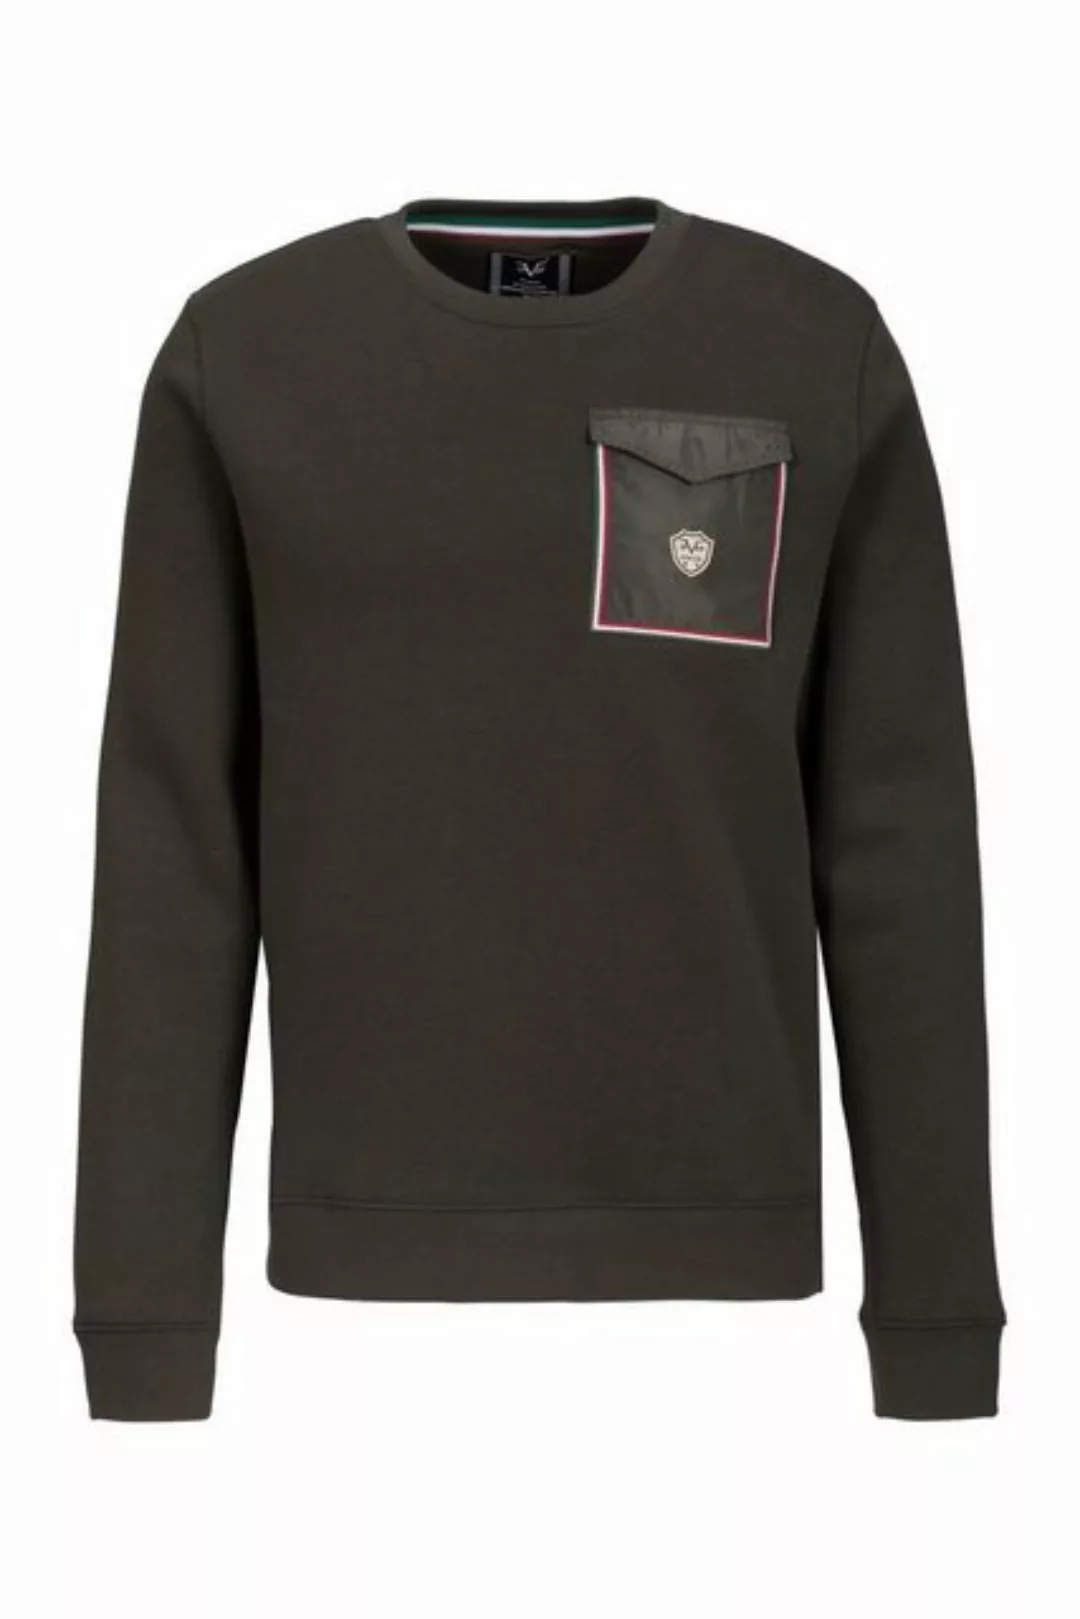 19V69 Italia by Versace Sweatshirt by Versace Sportivo SRL - Mino günstig online kaufen